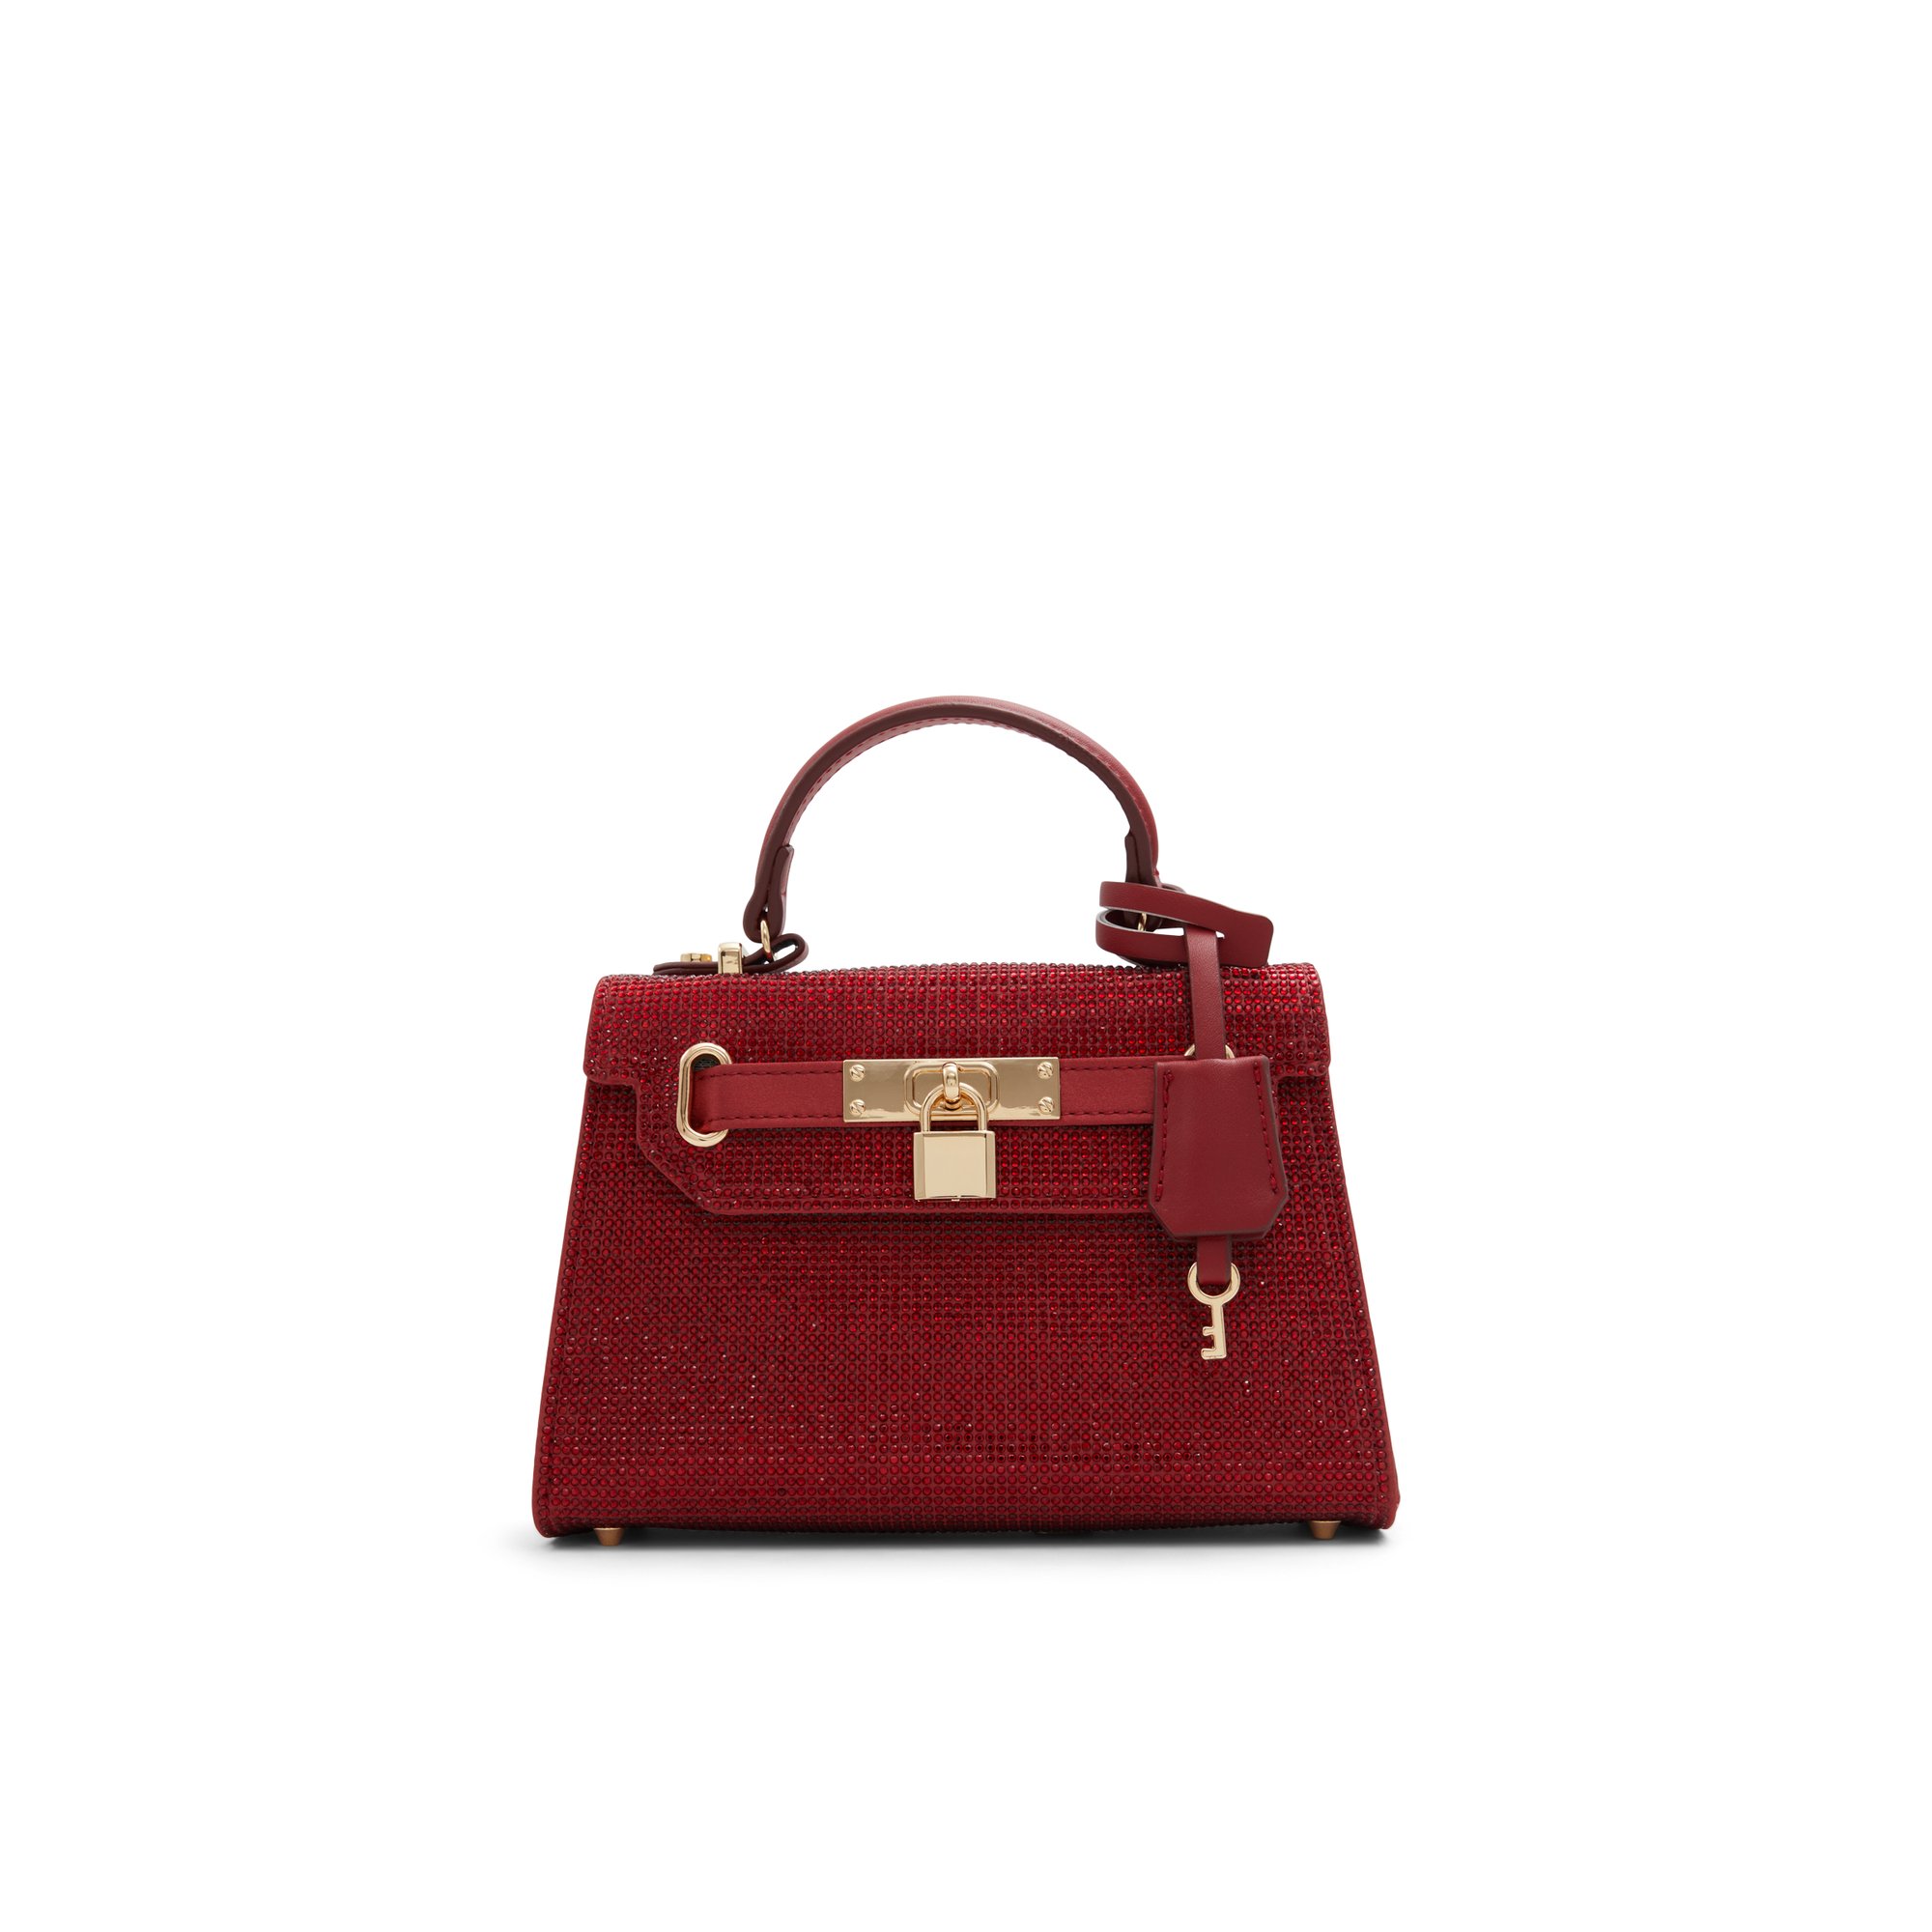 ALDO Caisynx - Women's Top Handle Handbag - Red